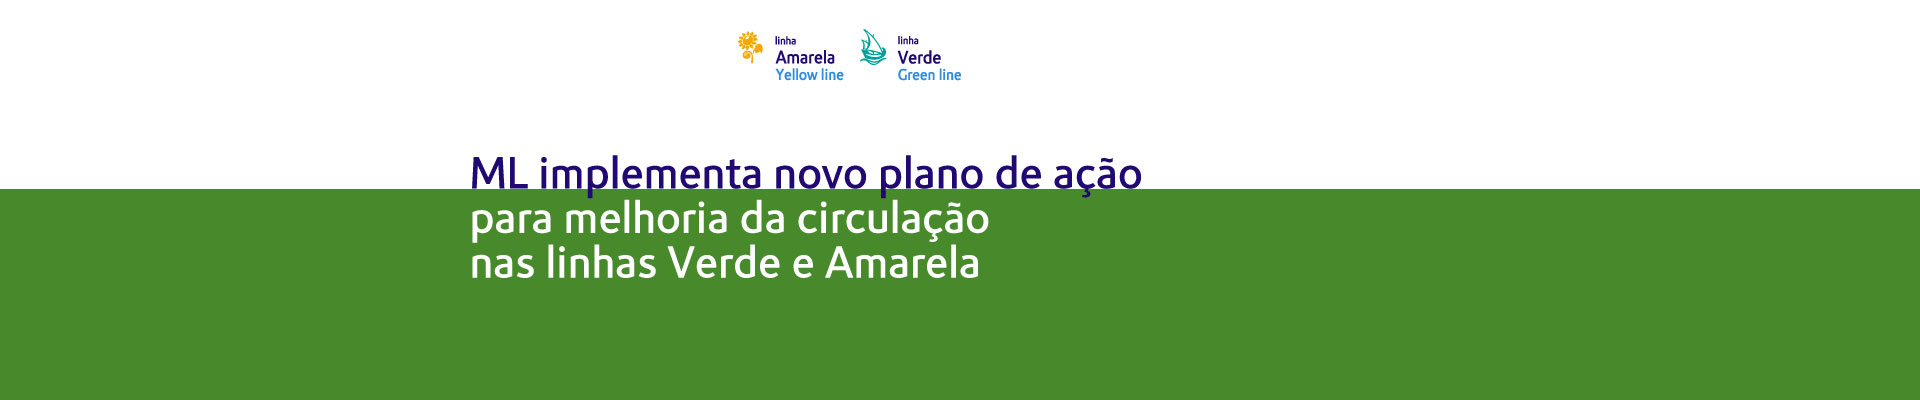 Metropolitano de Lisboa implementa novo plano de ação para melhoria da circulação nas linhas Verde e Amarela  